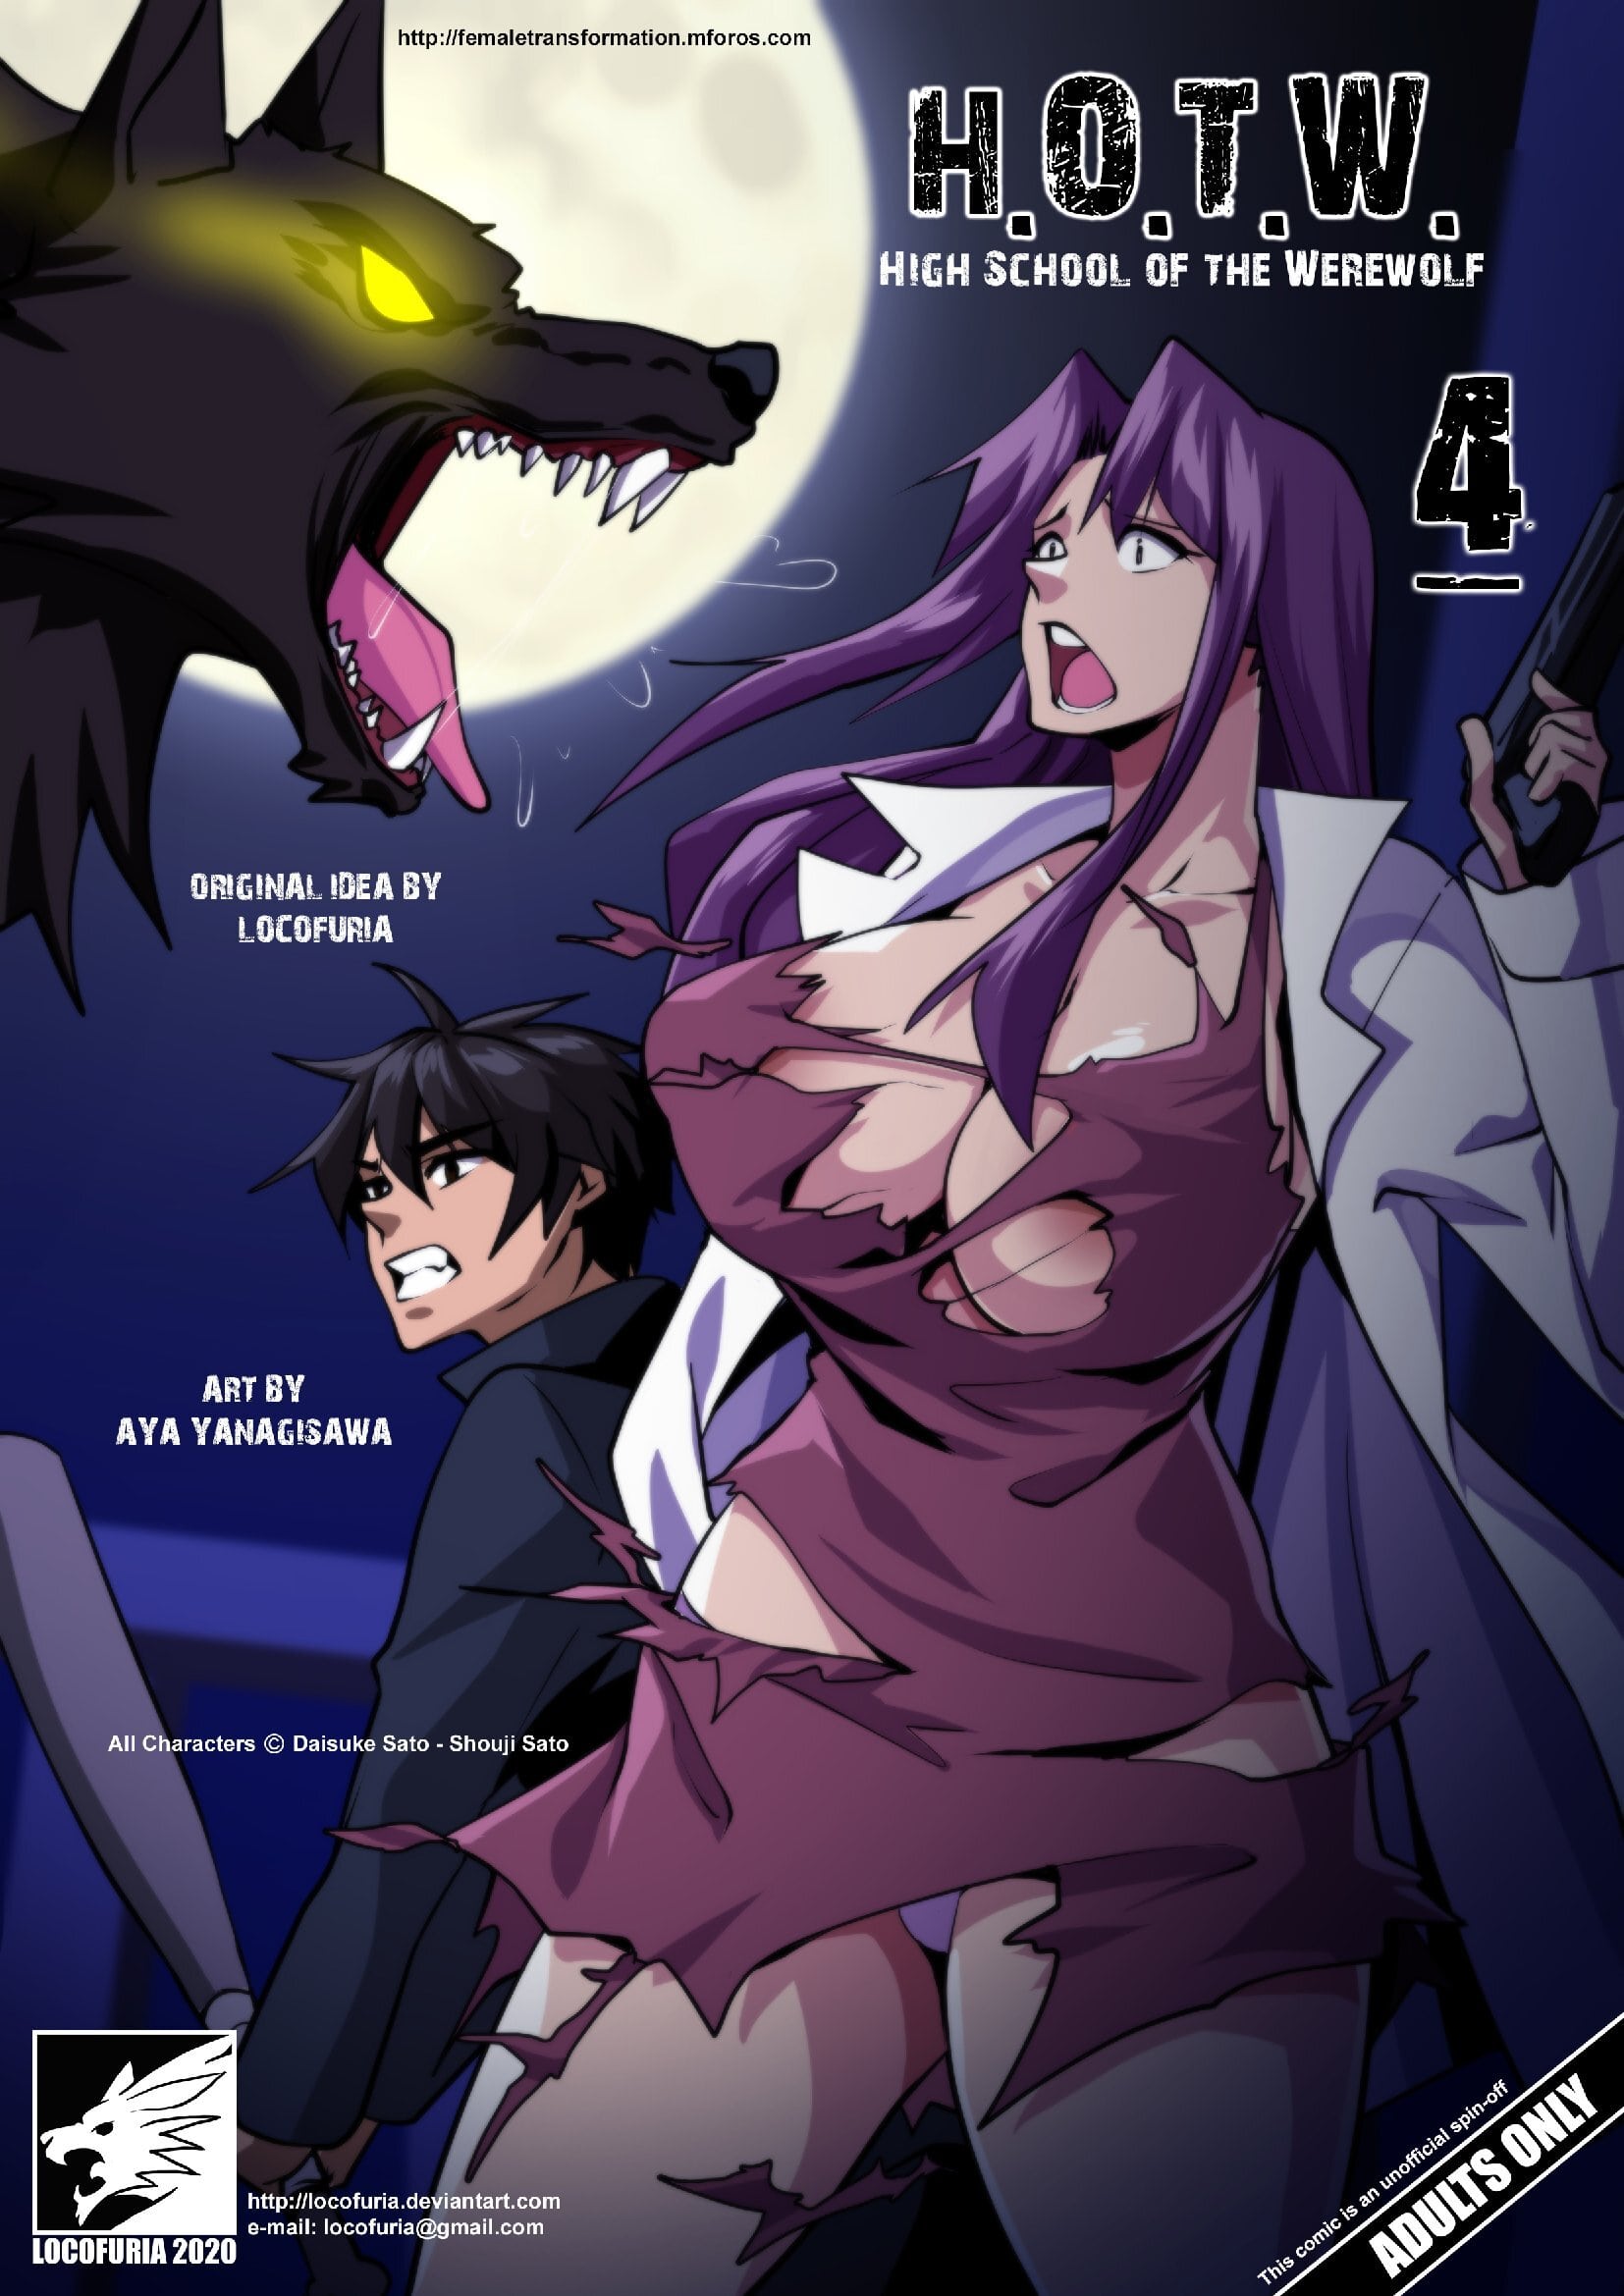 Werewolf porn anime